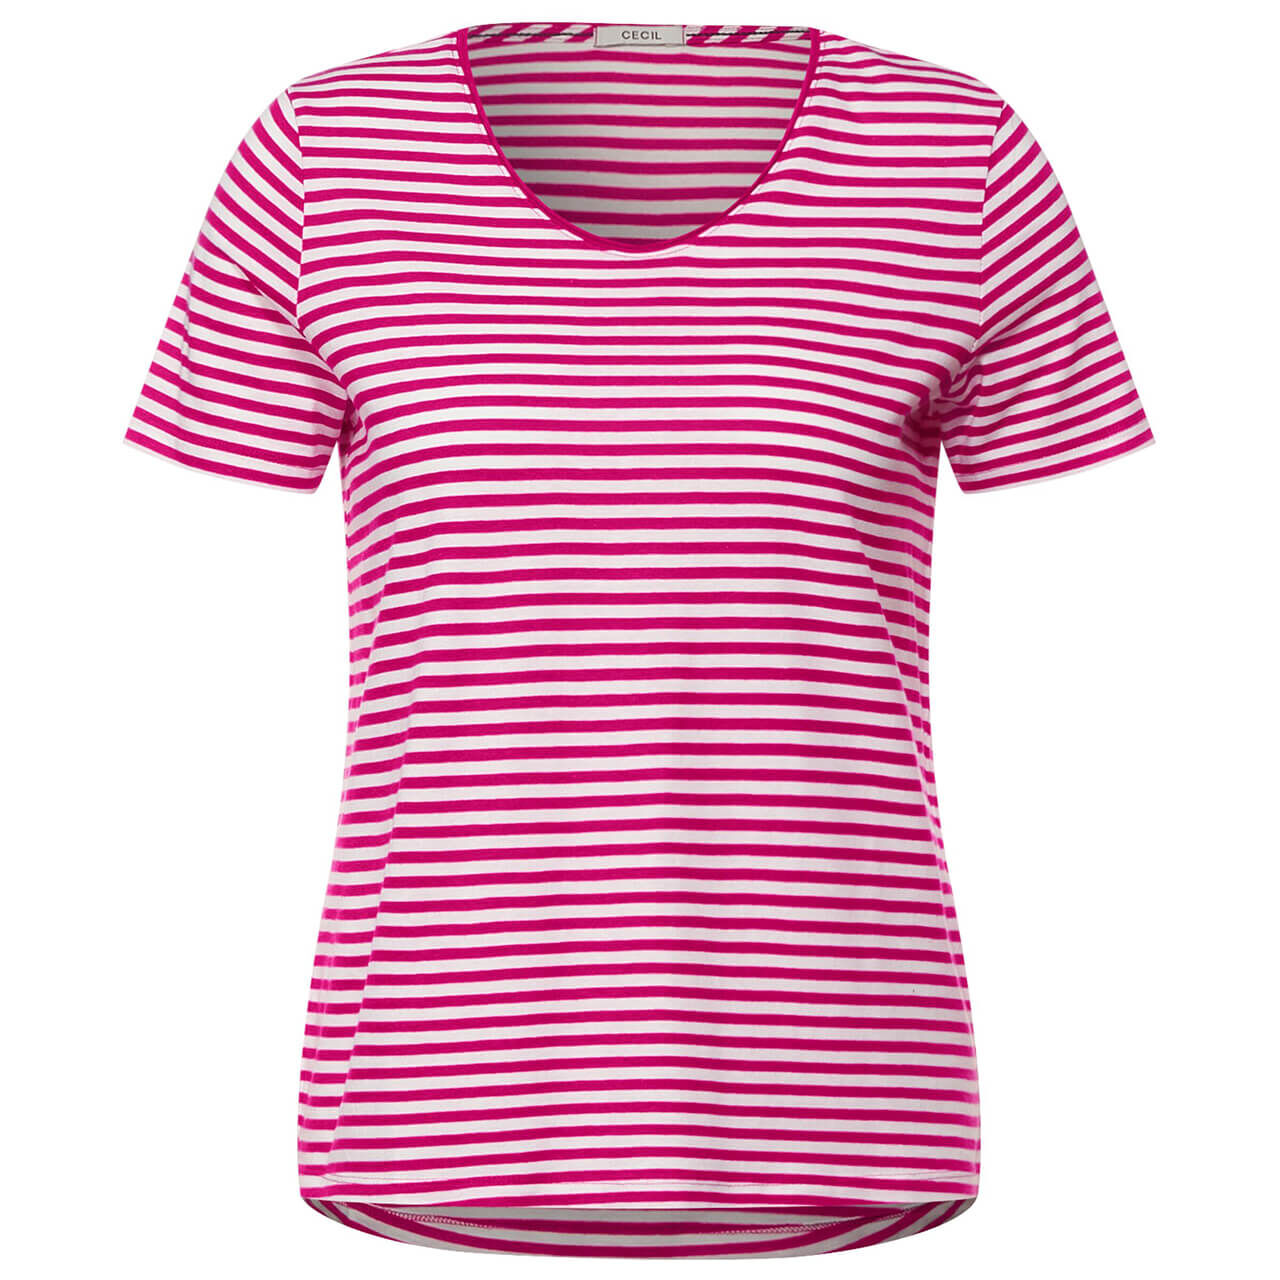 Cecil Striped Rounded V-Neck T-Shirt für Damen in Pink gestreift, FarbNr.: 23822